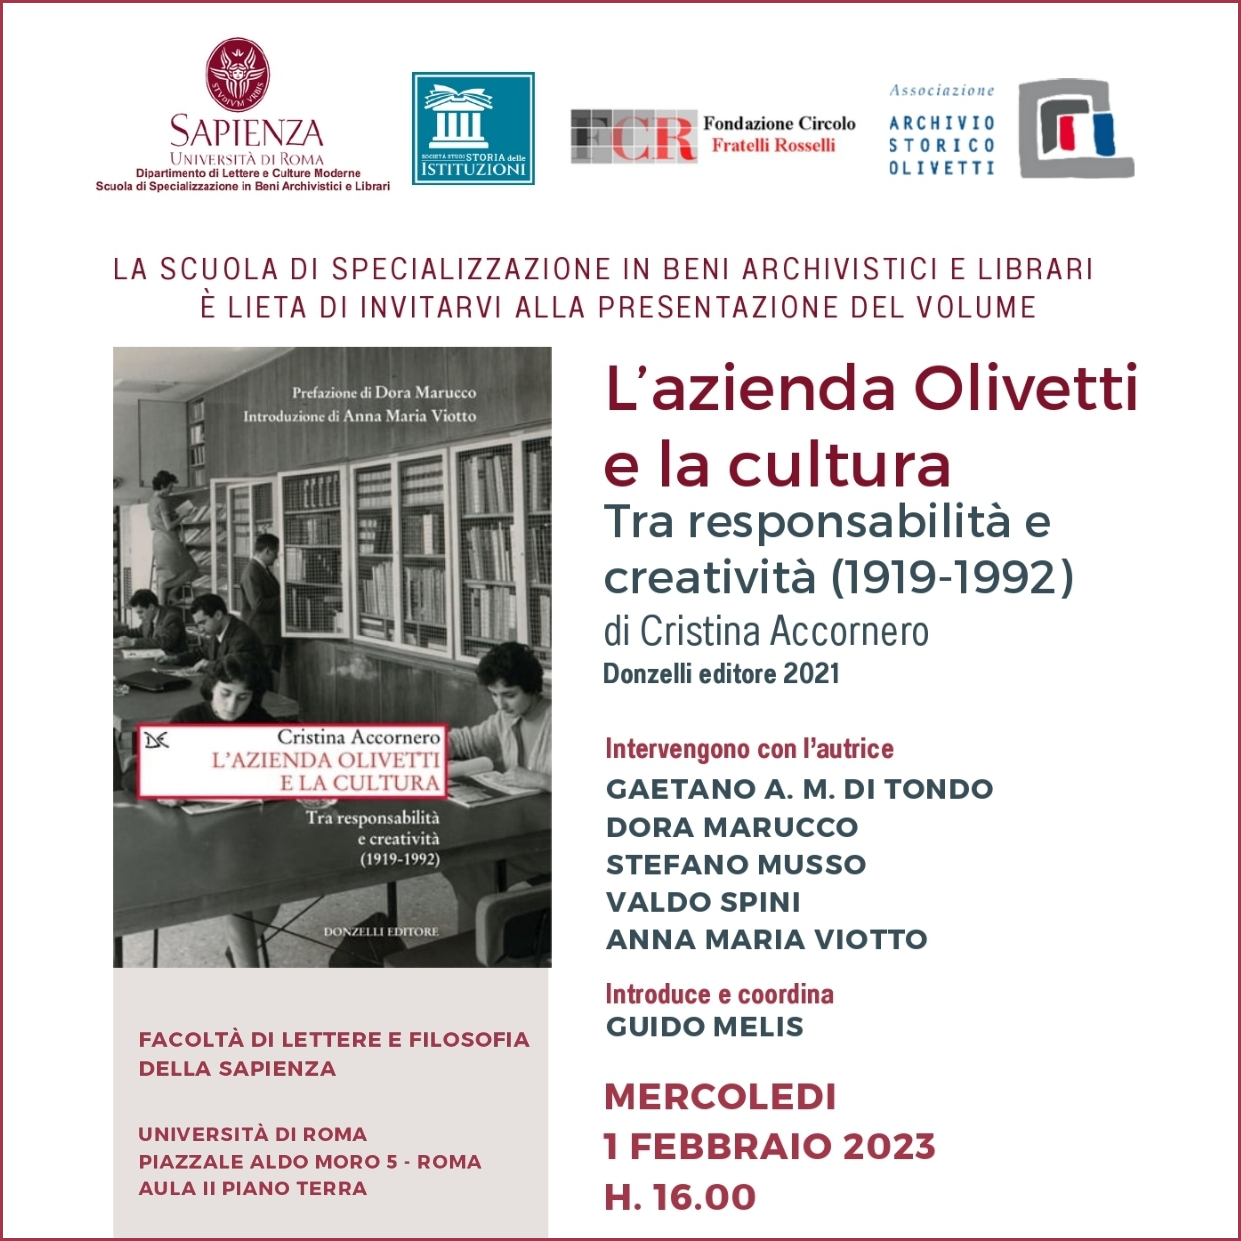 Presentazione del volume “L’azienda Olivetti e la cultura” all’Università di Roma “La Sapienza”